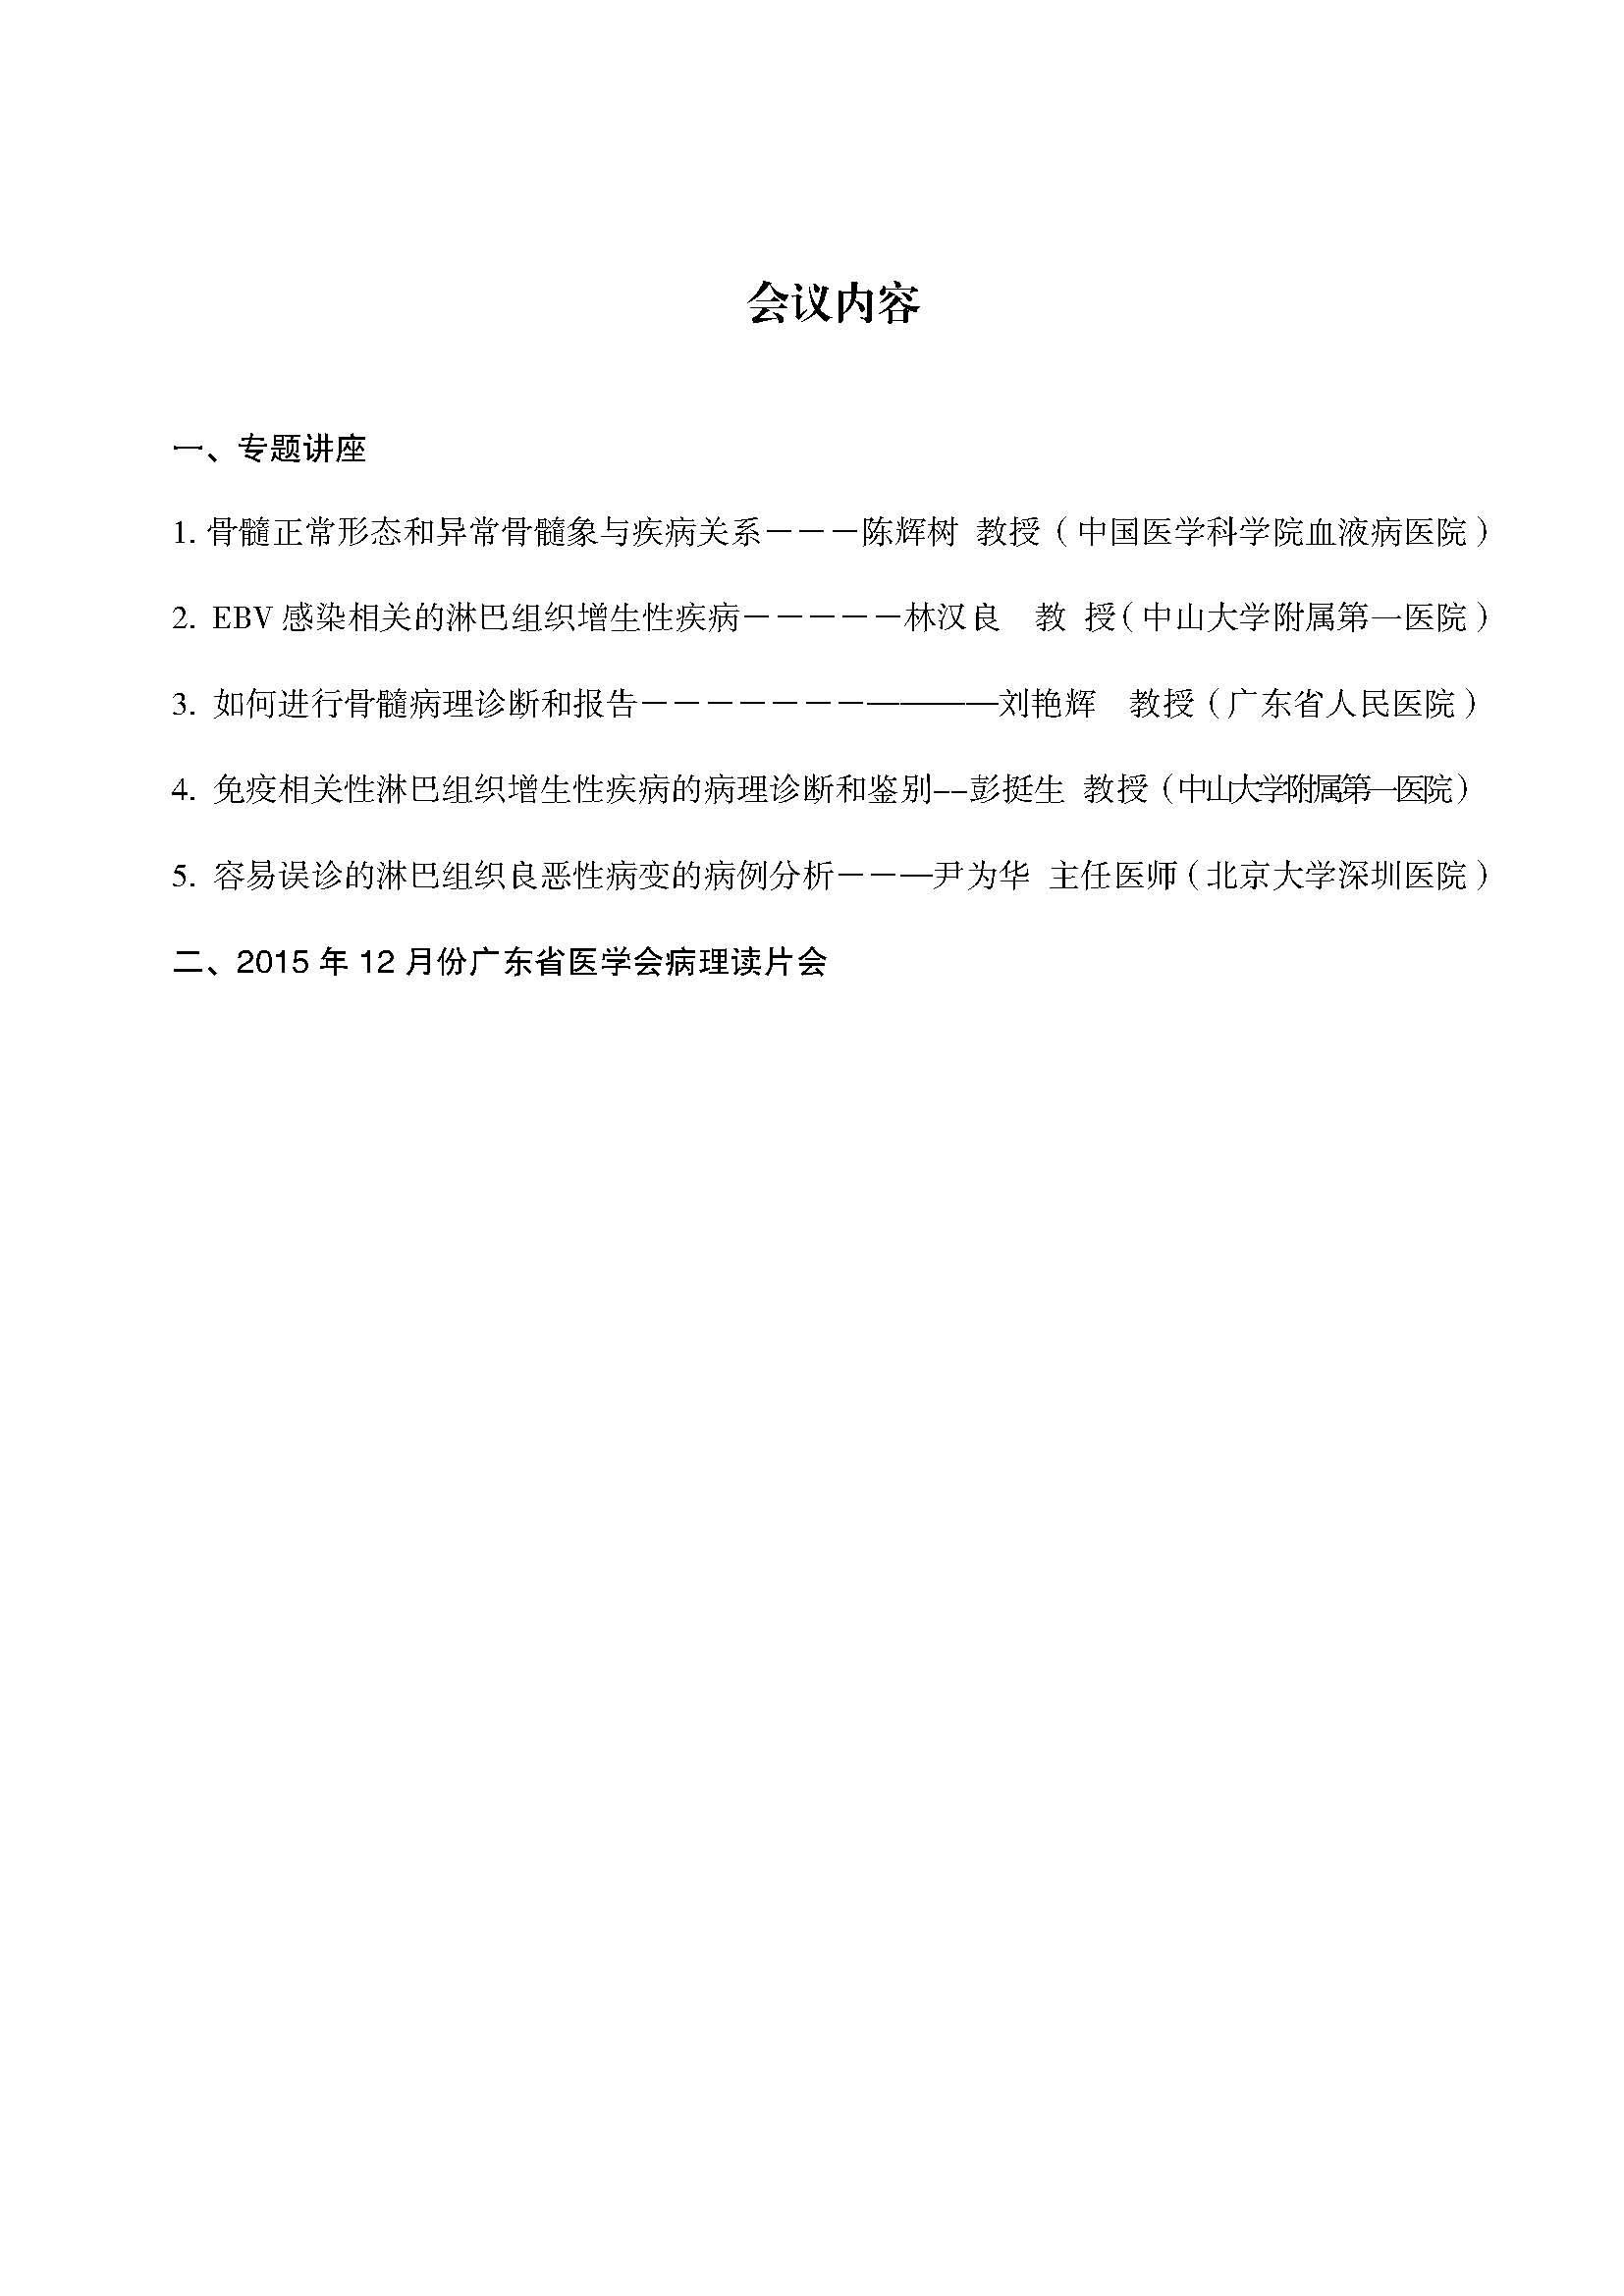 关于召开2015年广东省医学会病理学学术年会的通知(第二轮)